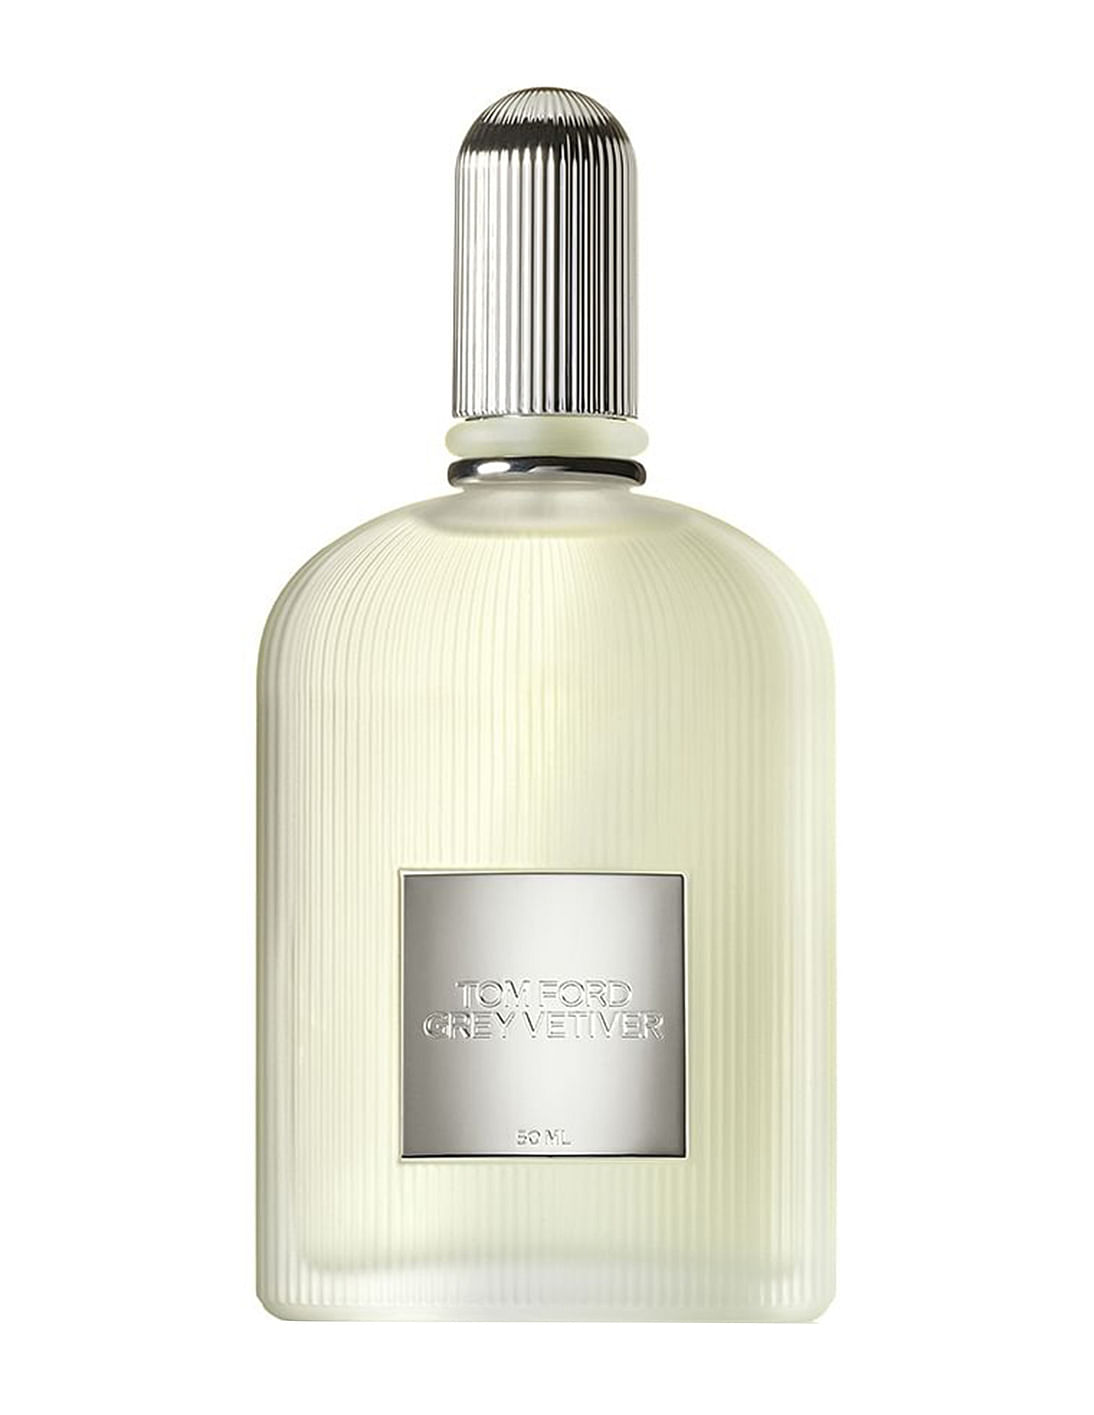 Buy TOM FORD Grey Vetiver Eau De Parfum - NNNOW.com